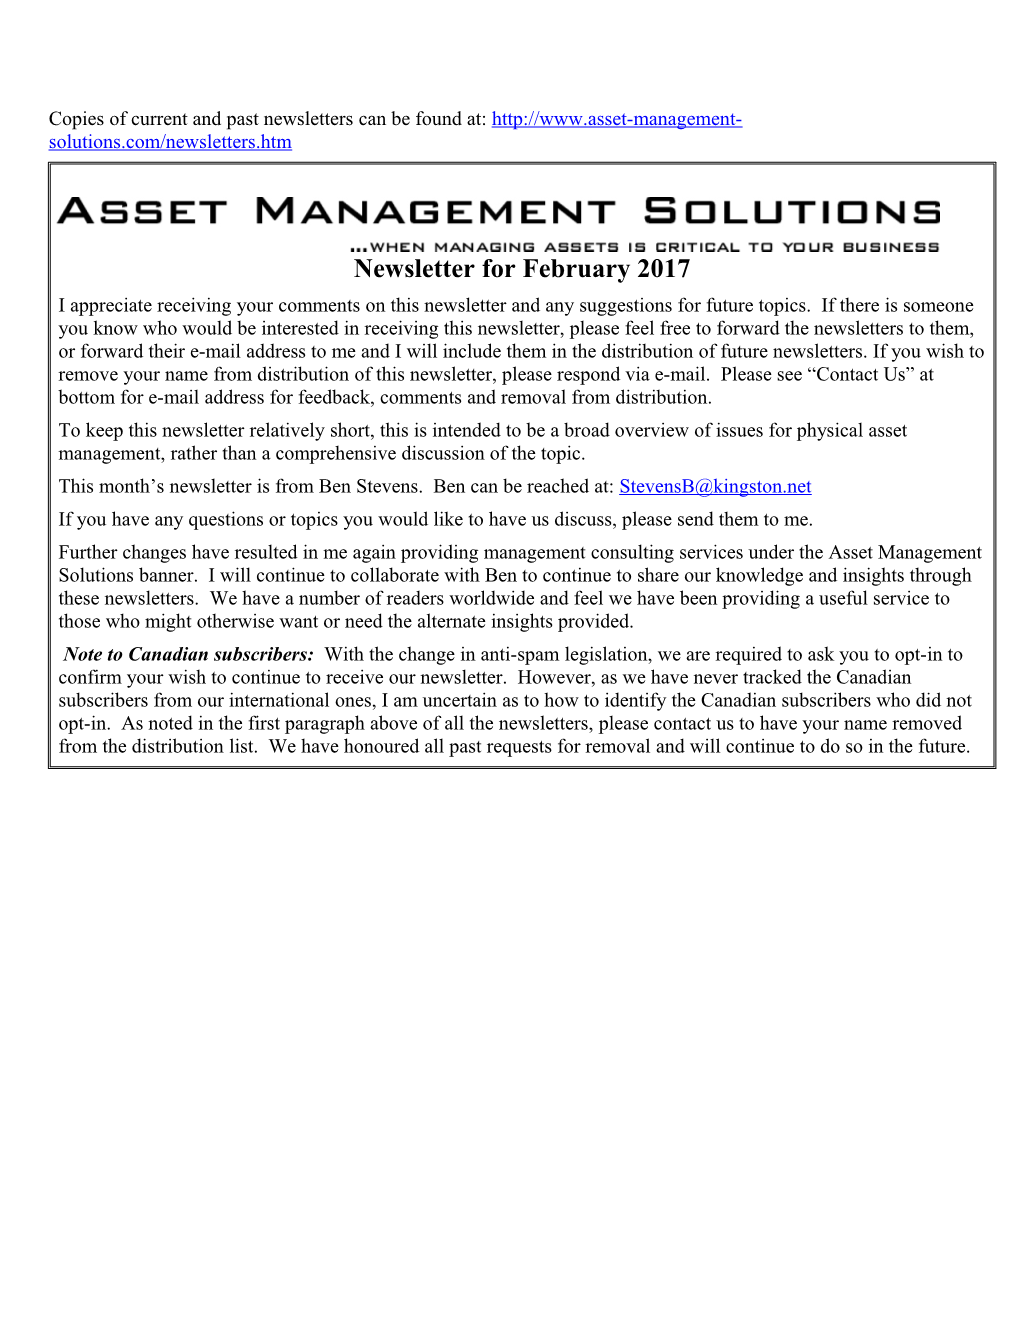 Asset Management Solutions Newsletter for February 2017